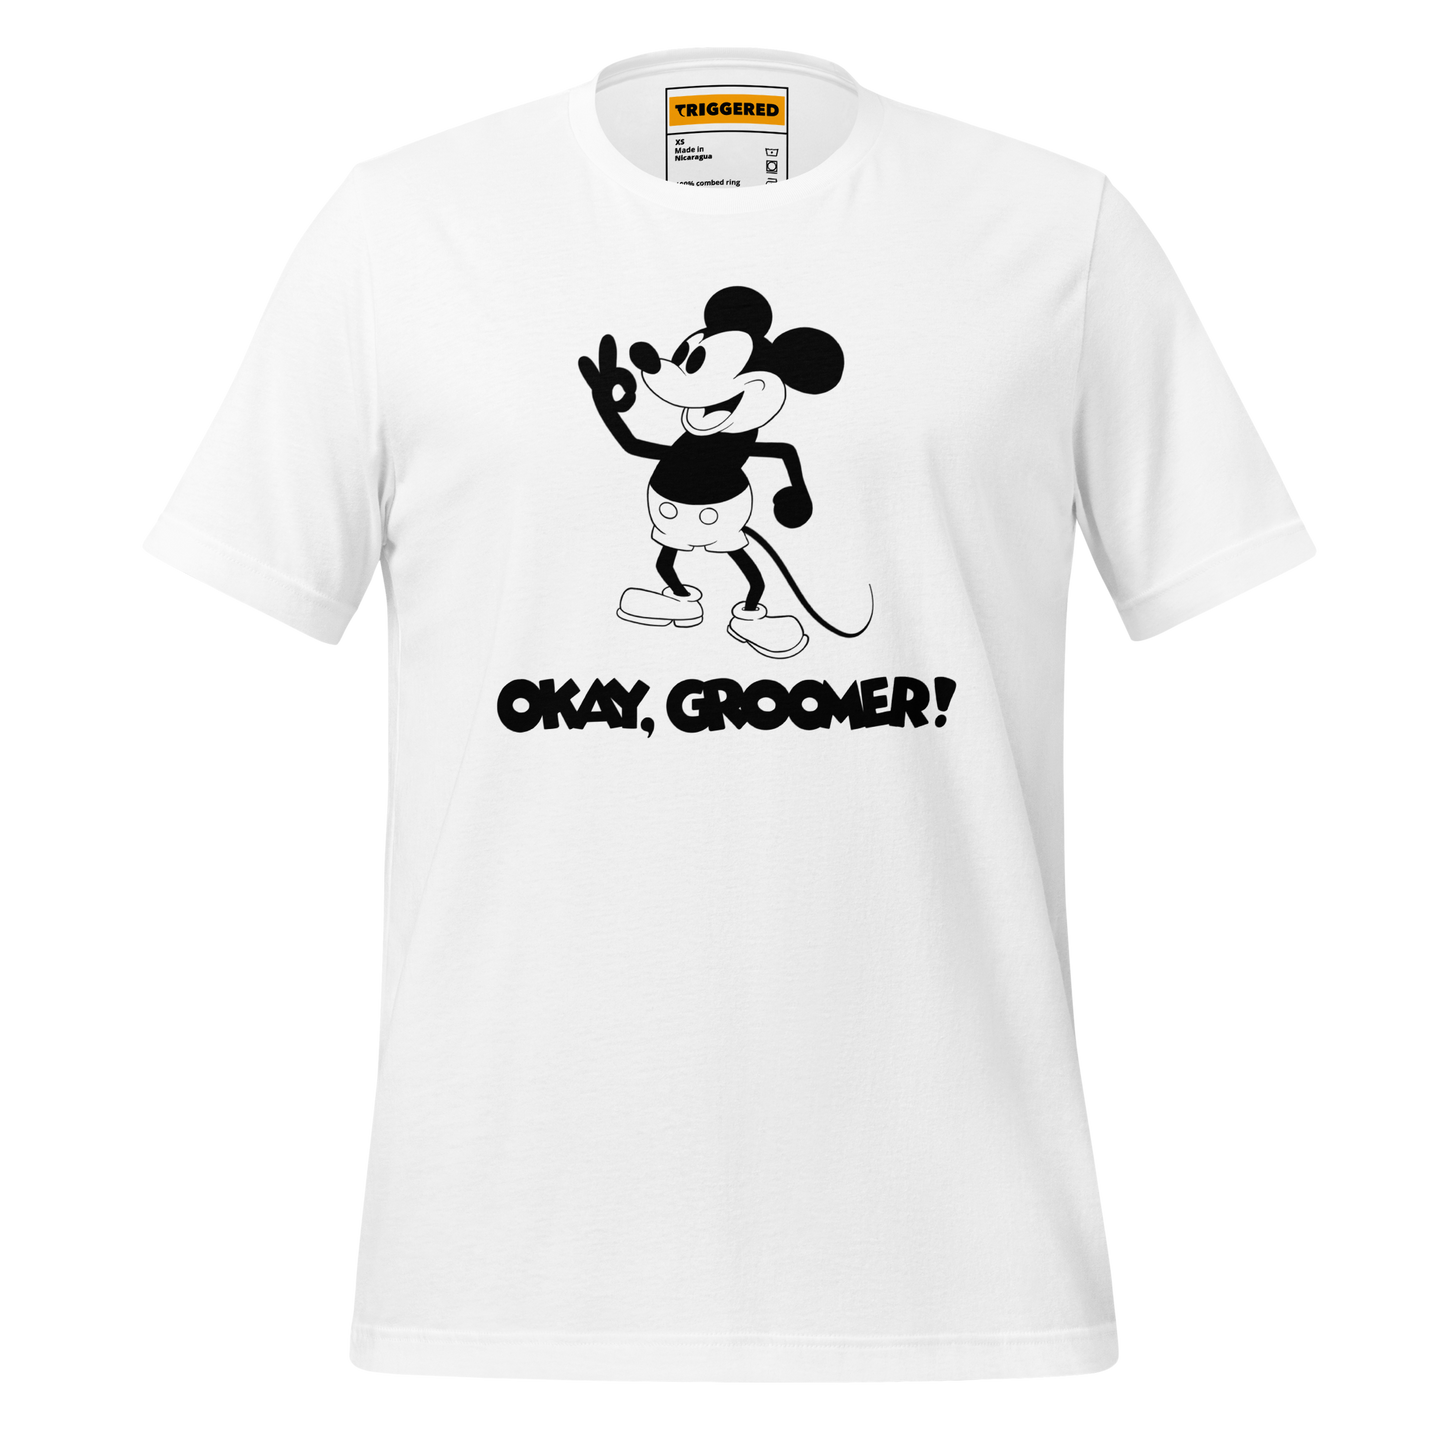 Okay, Groomer T-Shirt